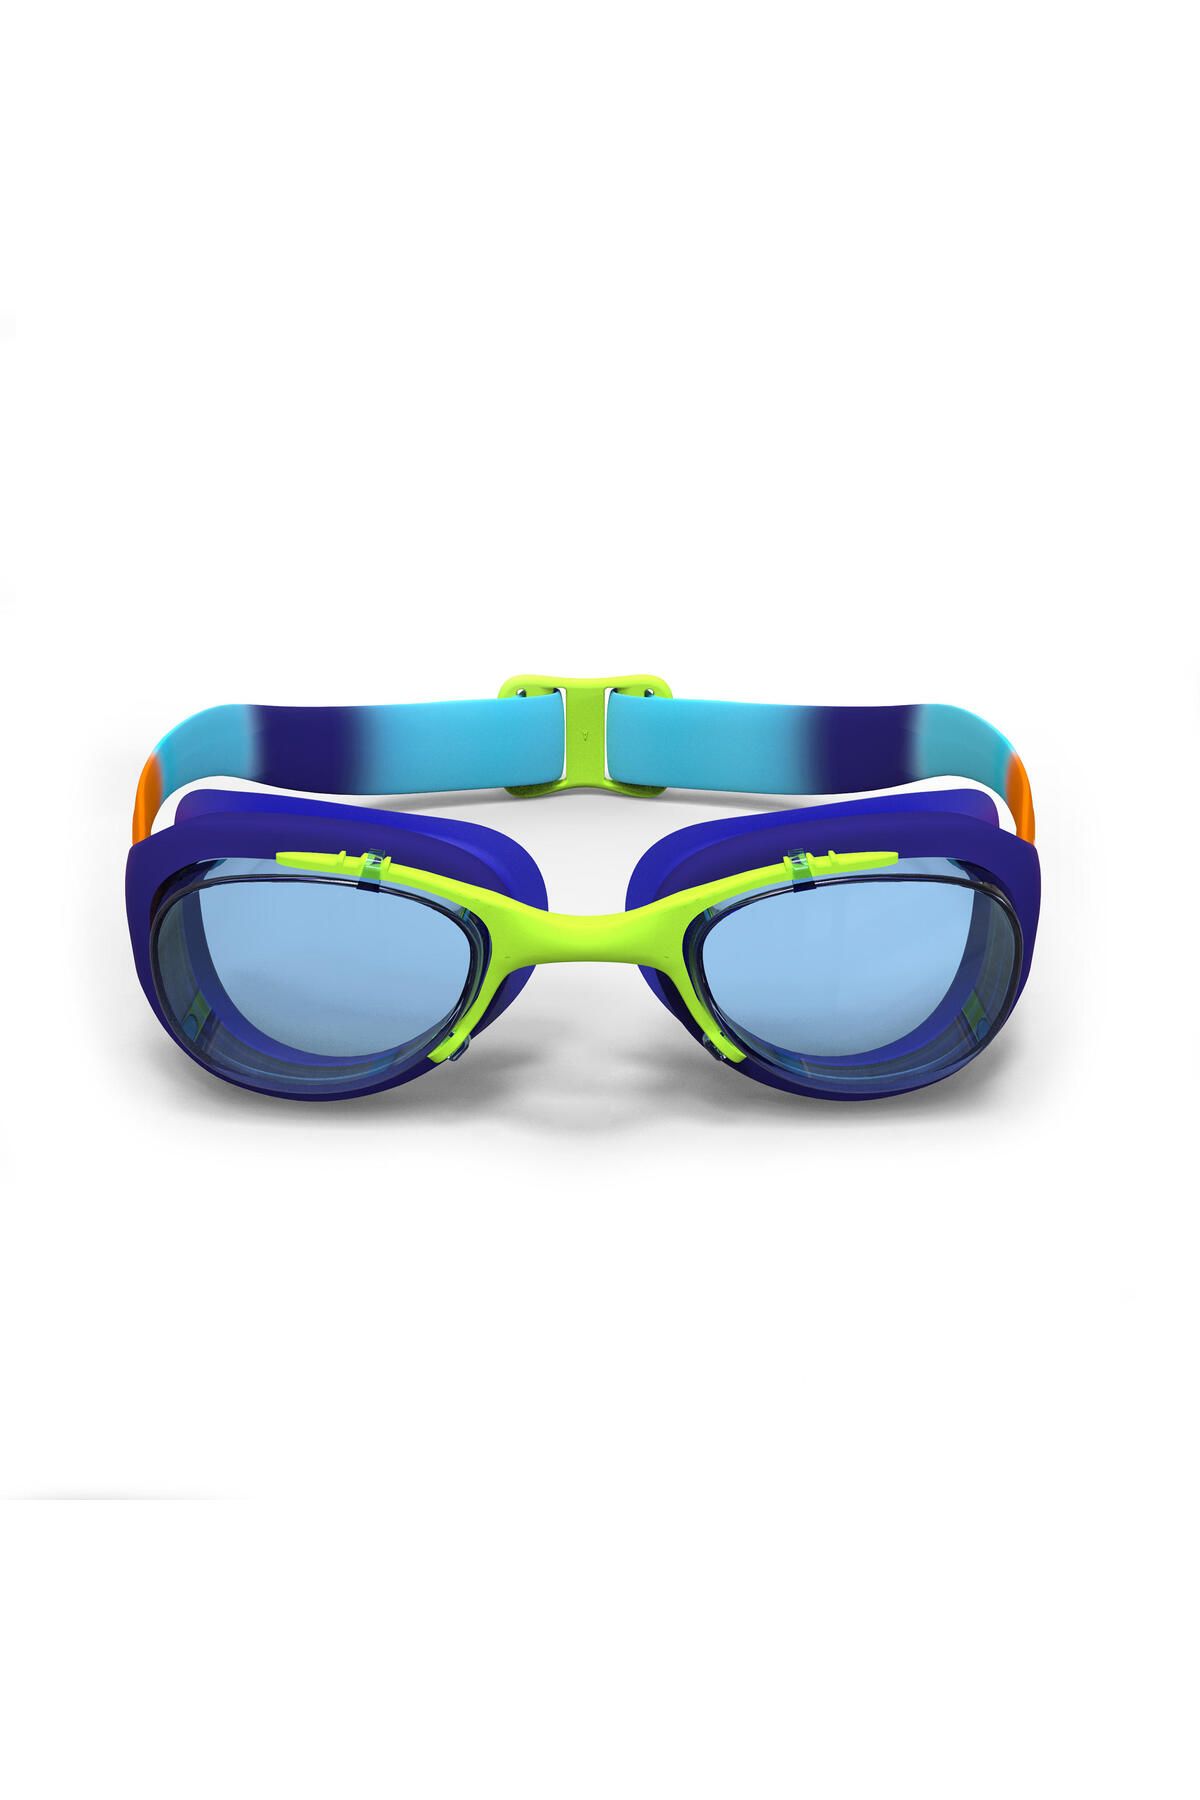 Decathlon Yüzücü Gözlüğü - S Boy - Turuncu / Mavi - 100 Xbase Dye